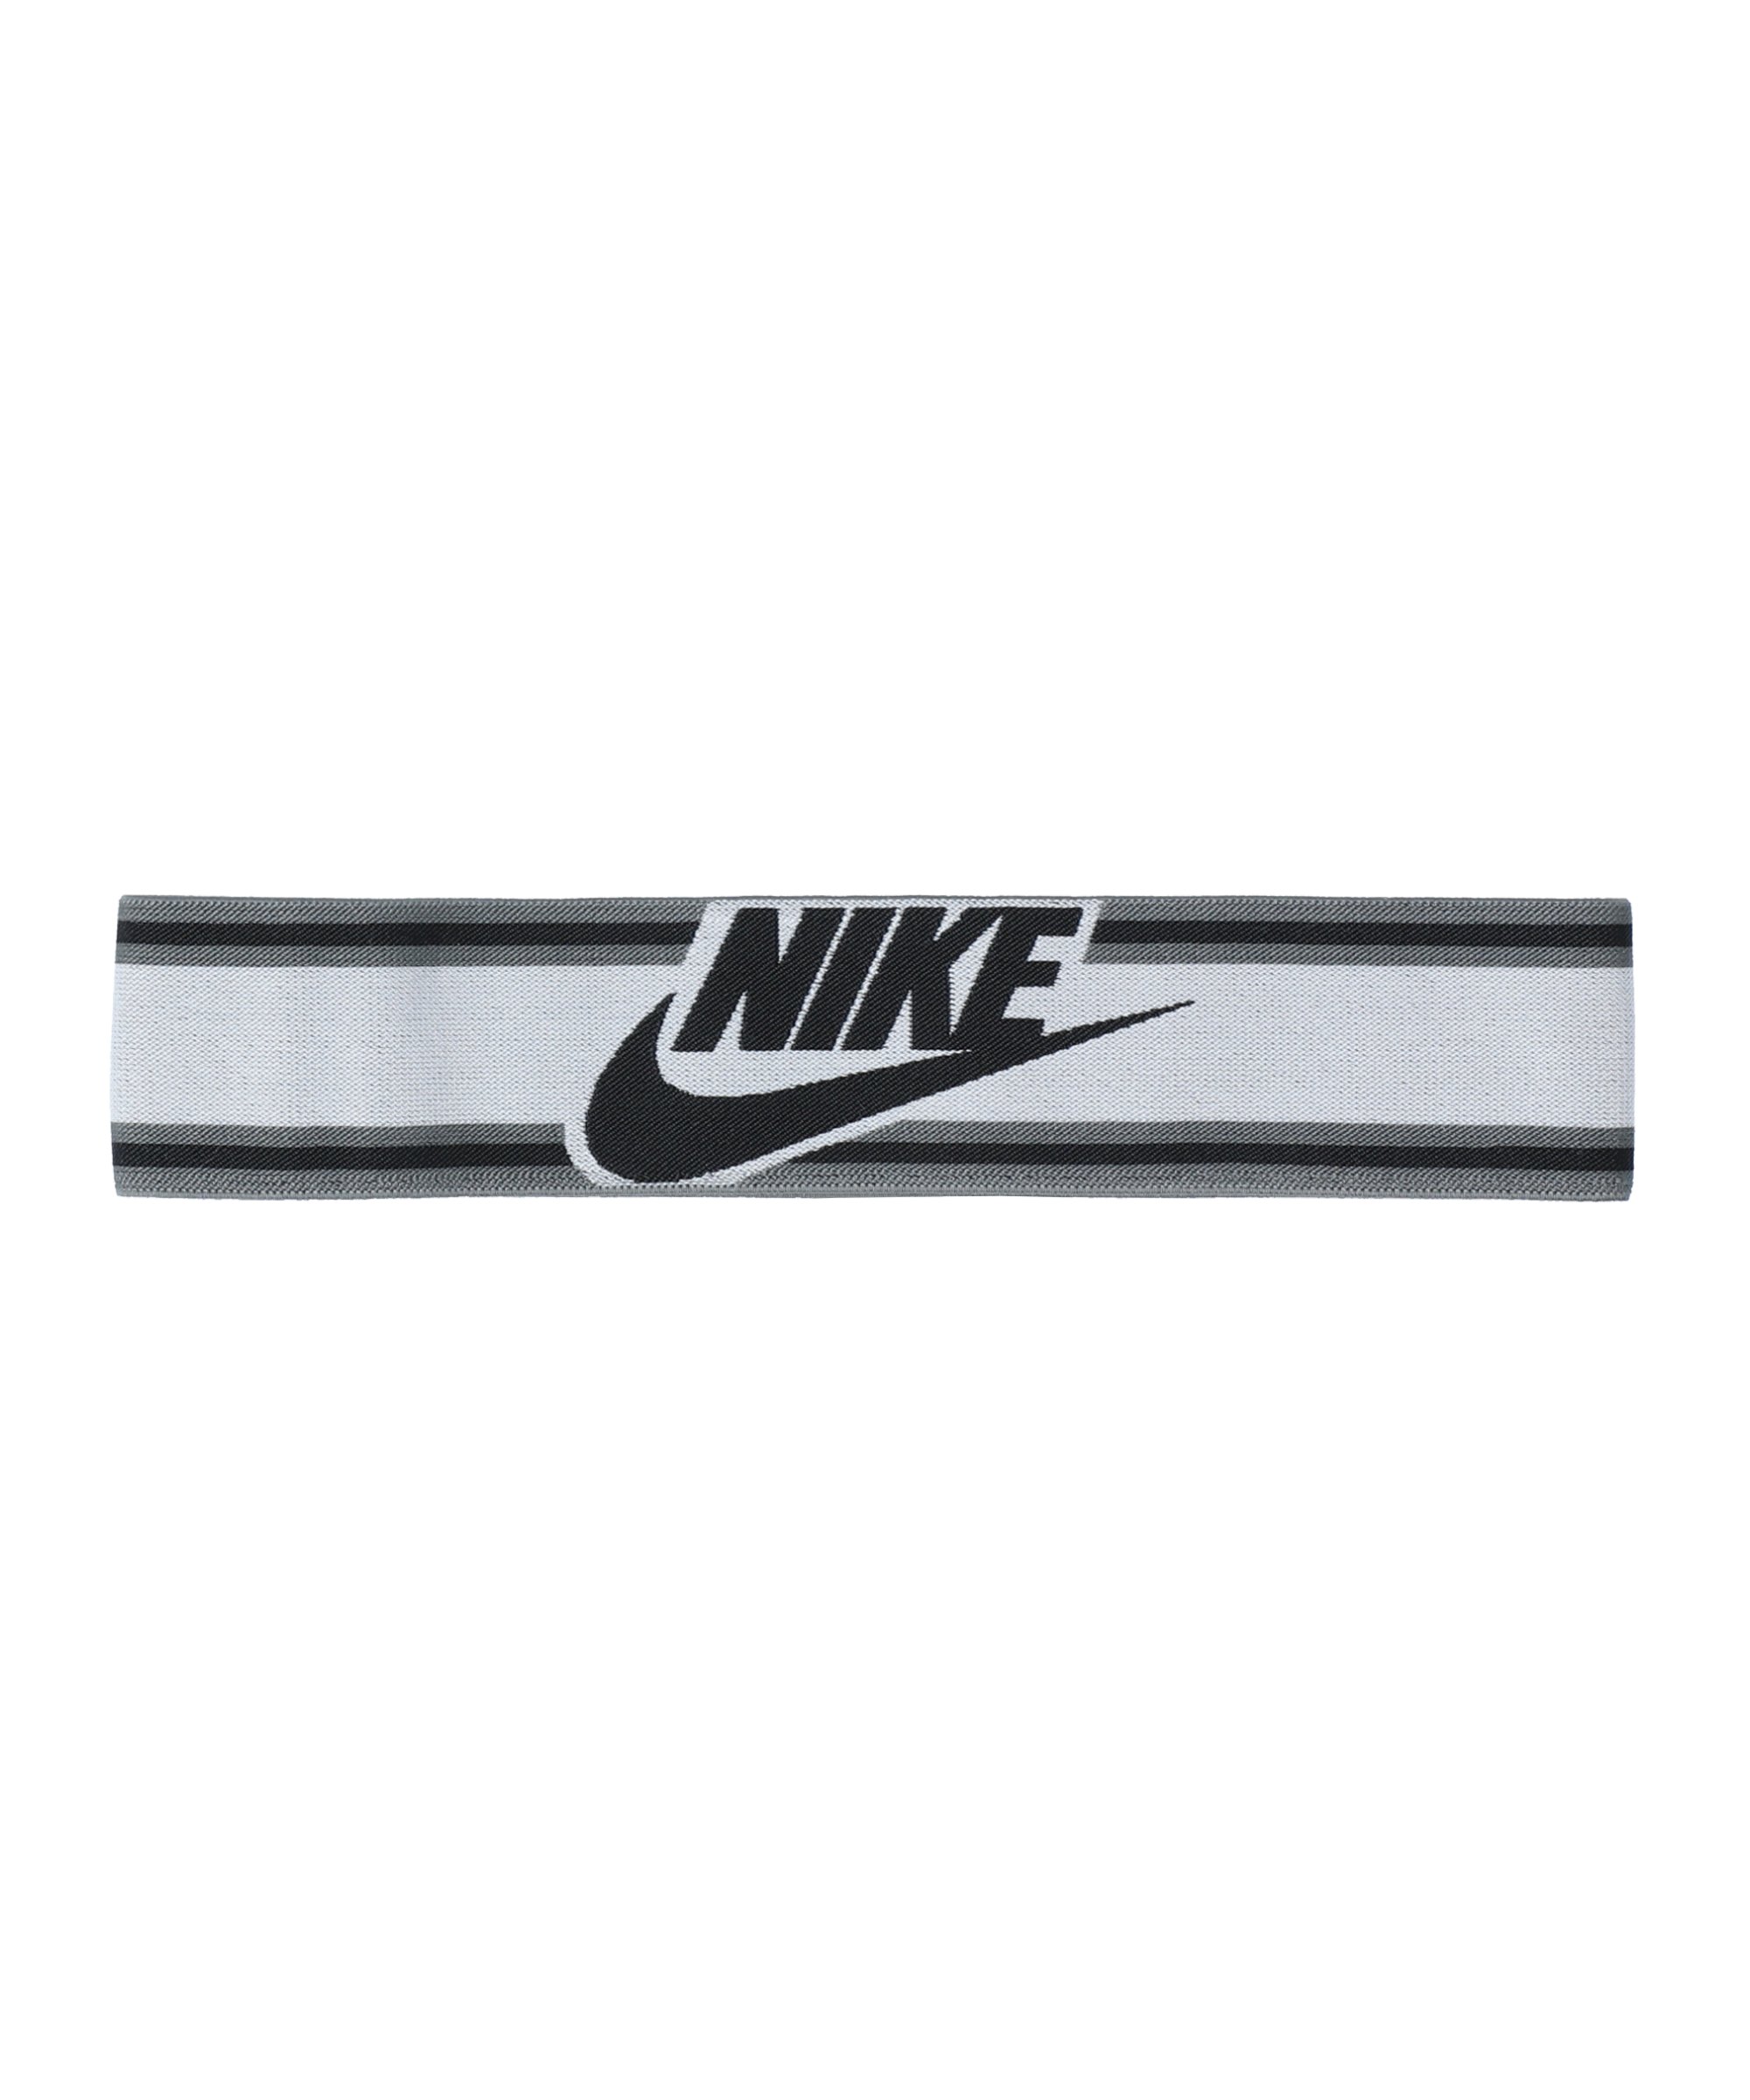 Nike Elastic Haarband Running Beige Grau F147 - grau